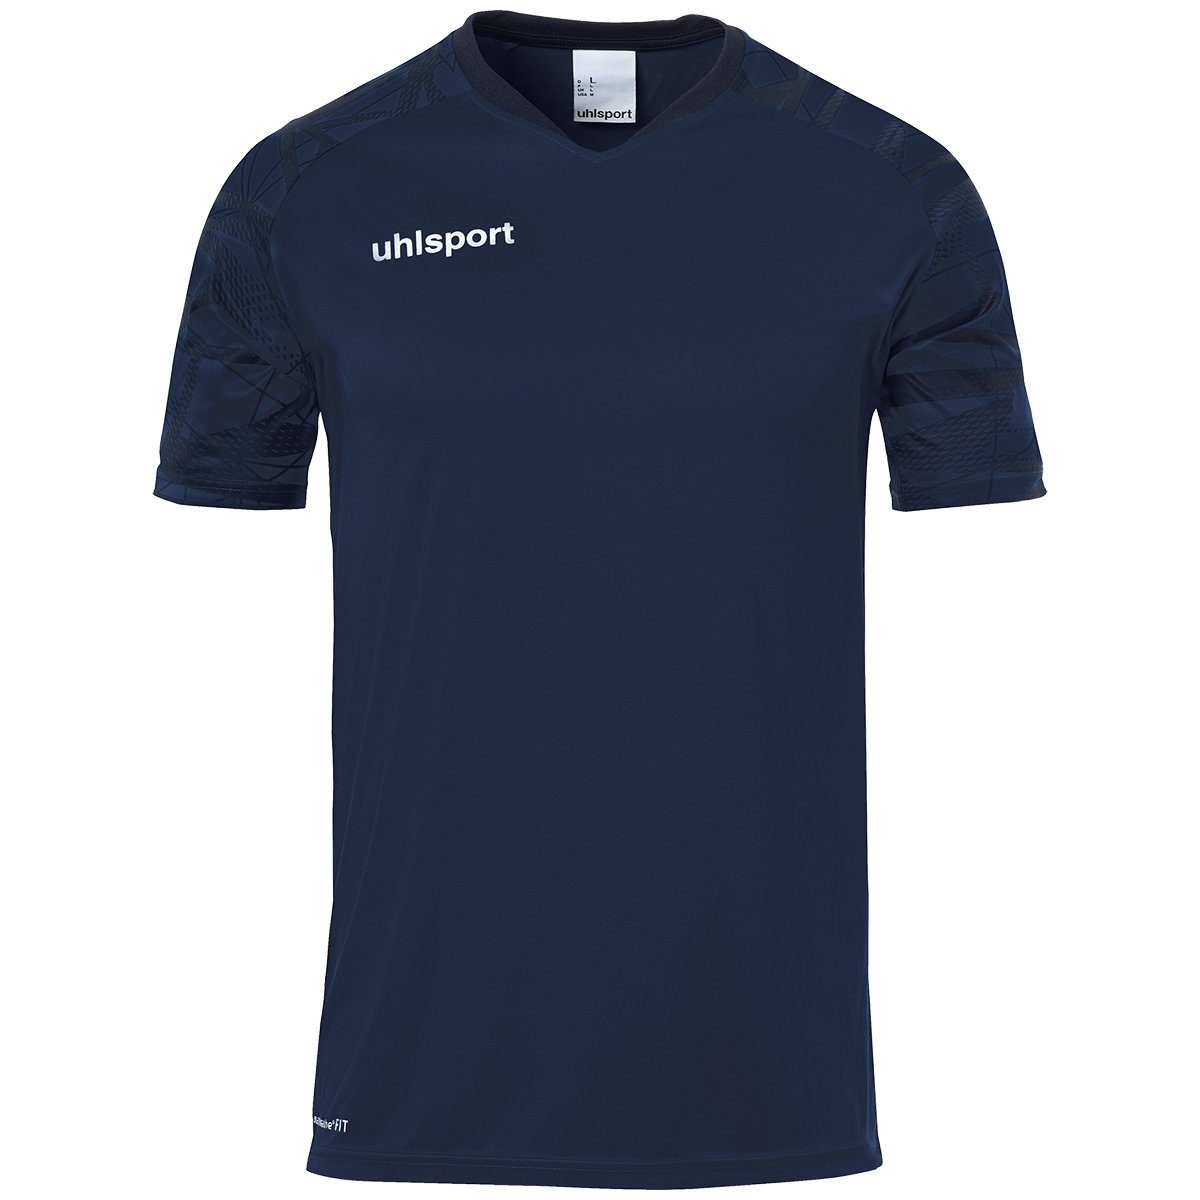 Trainingsshirt uhlsport uhlsport marine/marine 25 GOAL Trainings-T-Shirt atmungsaktiv TRIKOT KURZARM